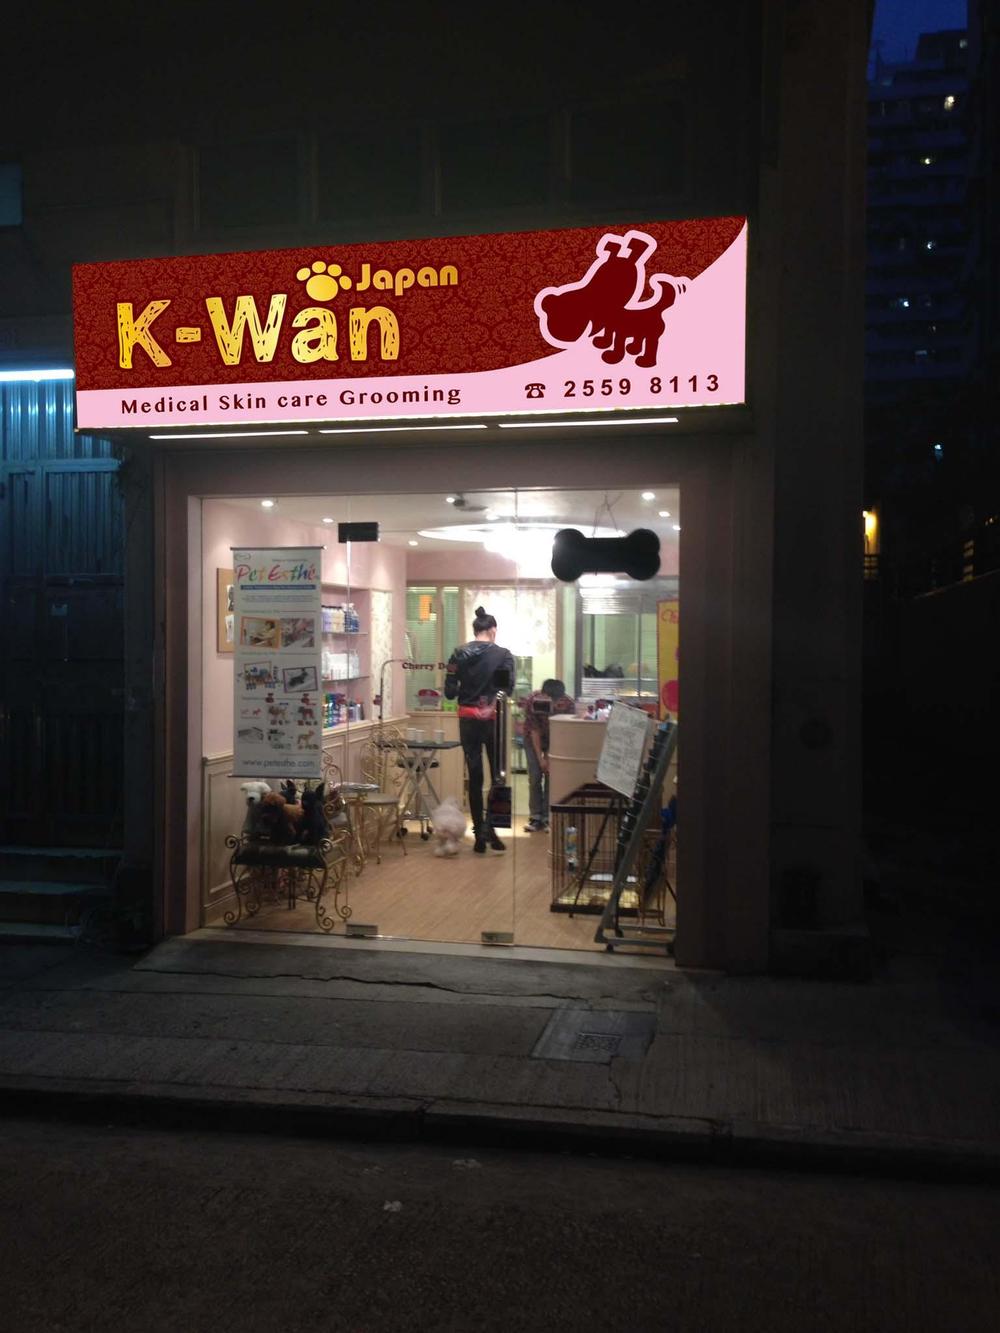 香港のトリミングショップ<K-Wan Japan>の看板